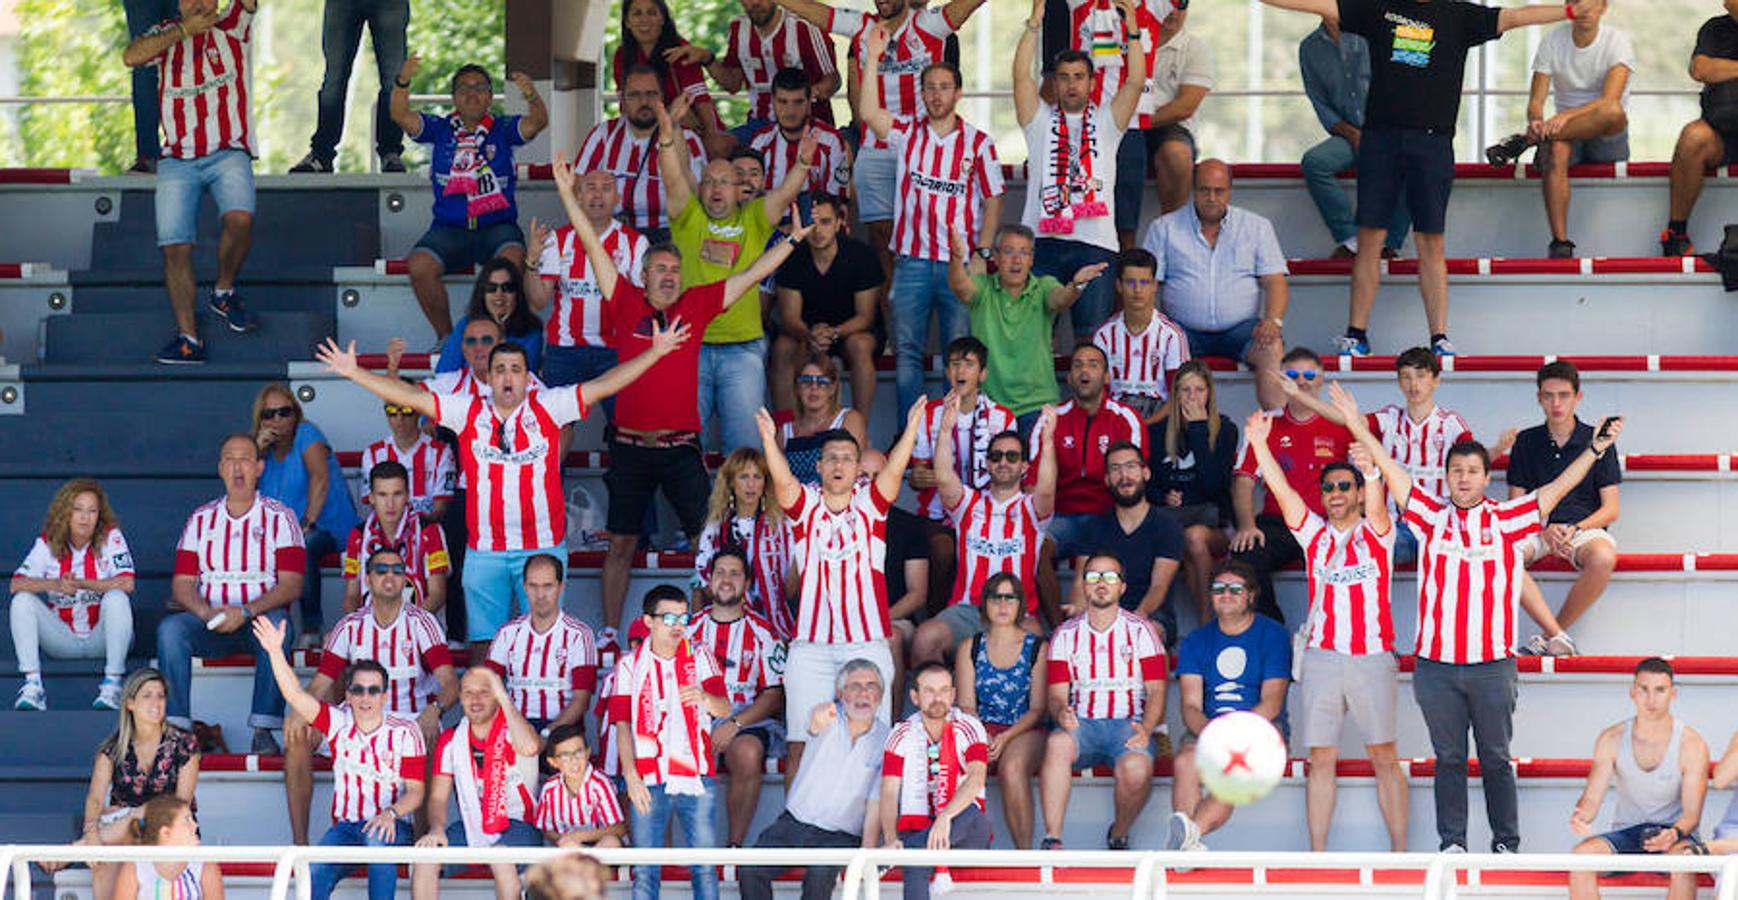 Gran comienzo de la UDL en Bilbao. La victoria riojana por 1-2 frente al Bilbao Athletic otorga al bloque de Sergio Rodríguez una energía extra en el arranque liguero. El buen trabajo colectivo revertió en un un triunfo convincente.